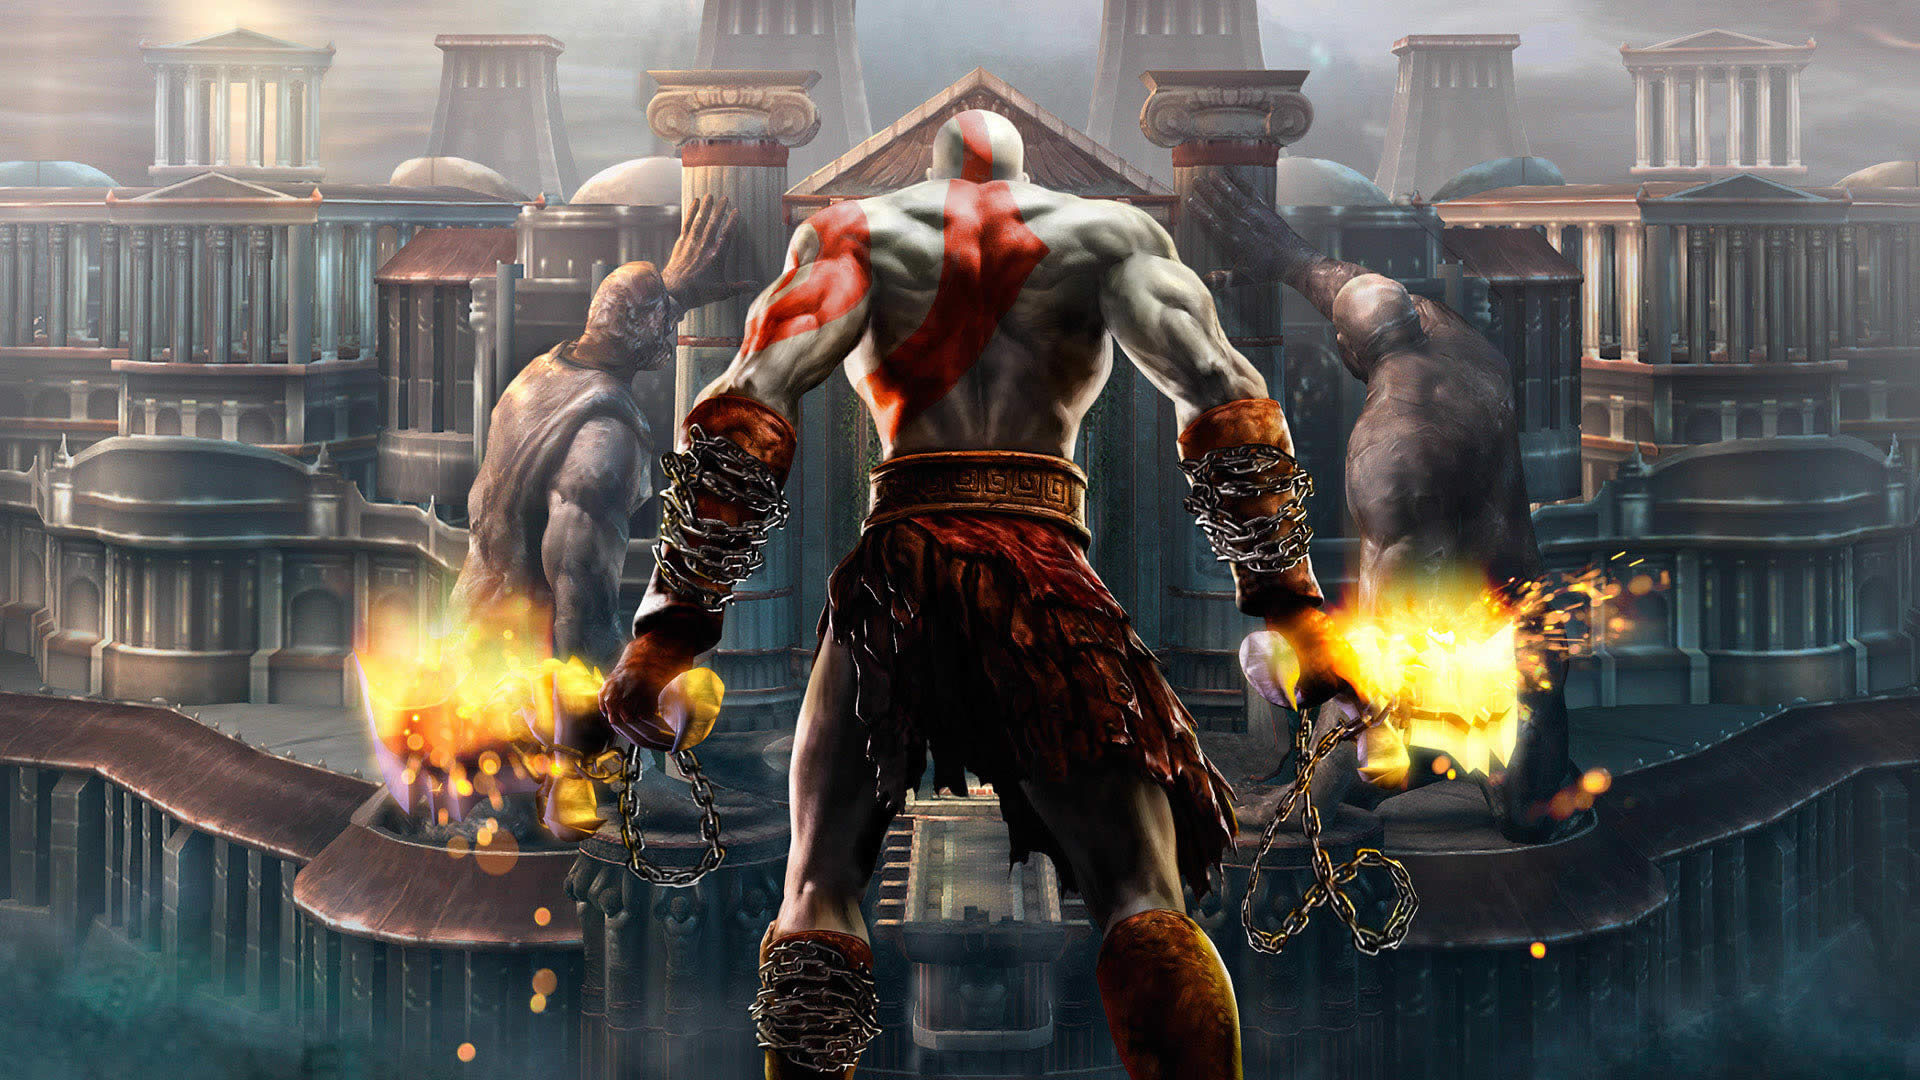 Kratos, the powerful God of War, in an epic high-definition desktop wallpaper.